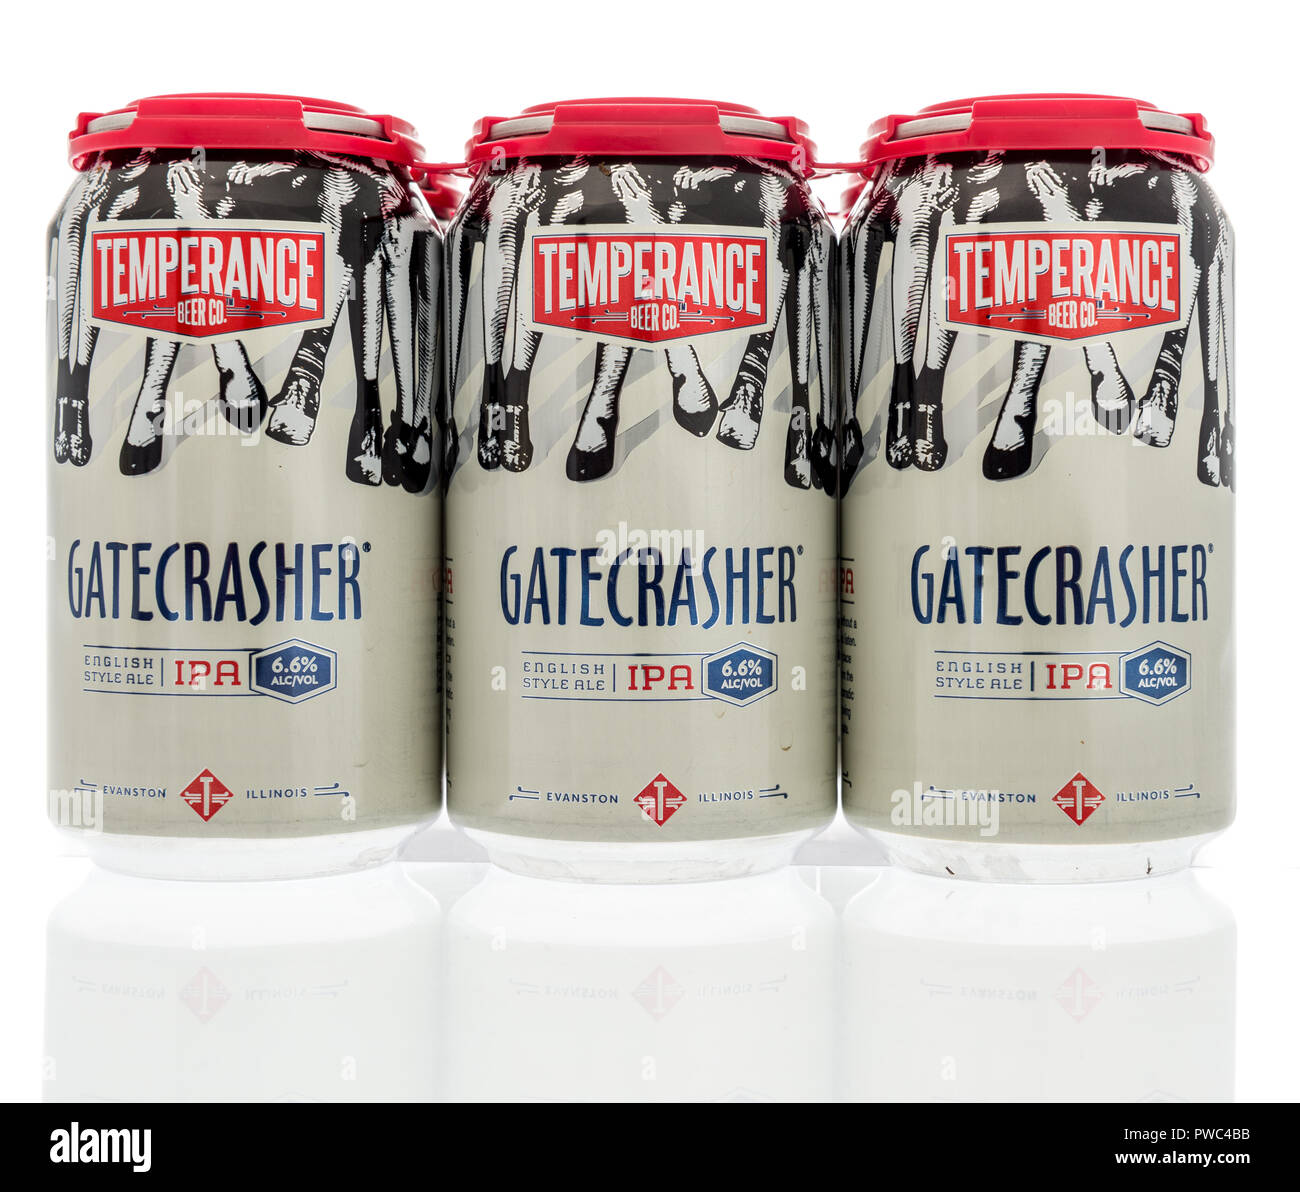 Winneconne, WI - 7 octobre 2018 : un six pack de bière IPA gatecrasher Tempérance sur un fond isolé Banque D'Images